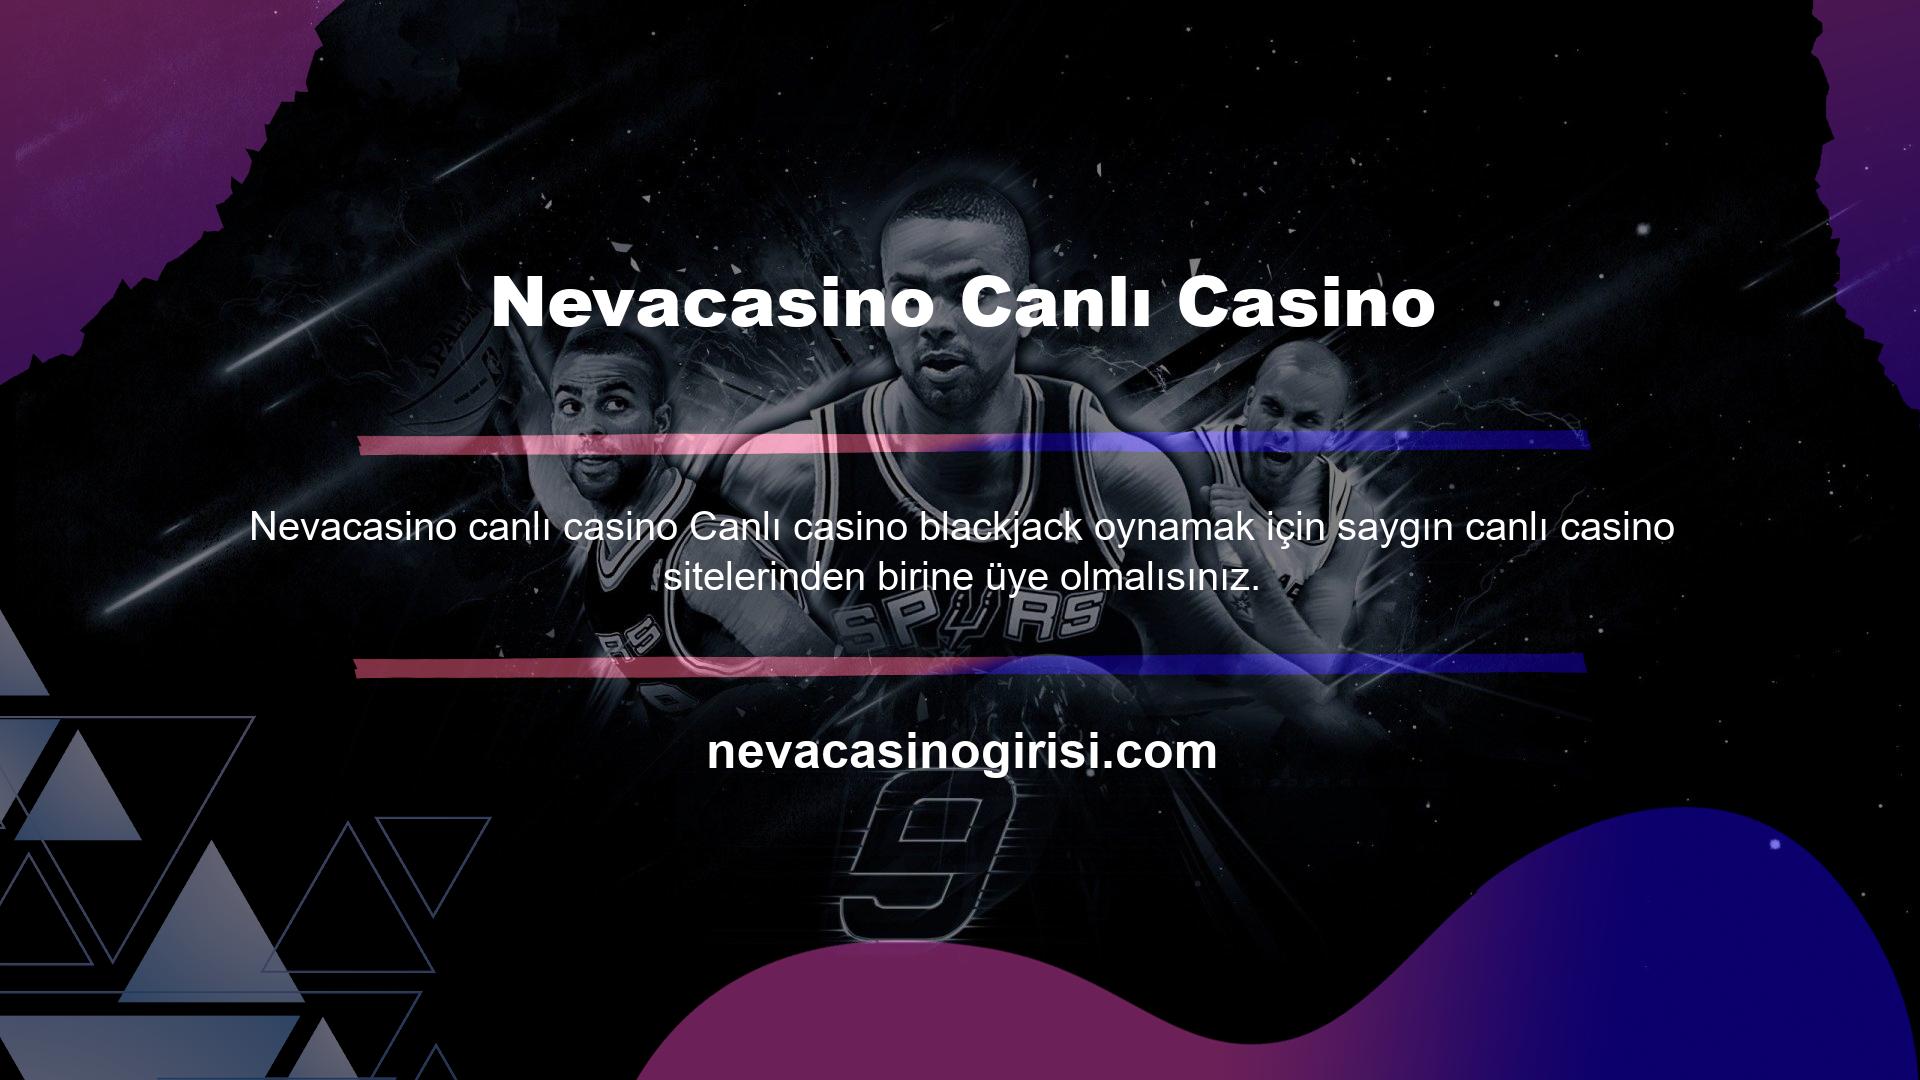 Programa kaydolarak canlı casino blackjack'i güvenilir ve anında oynayabilirsiniz